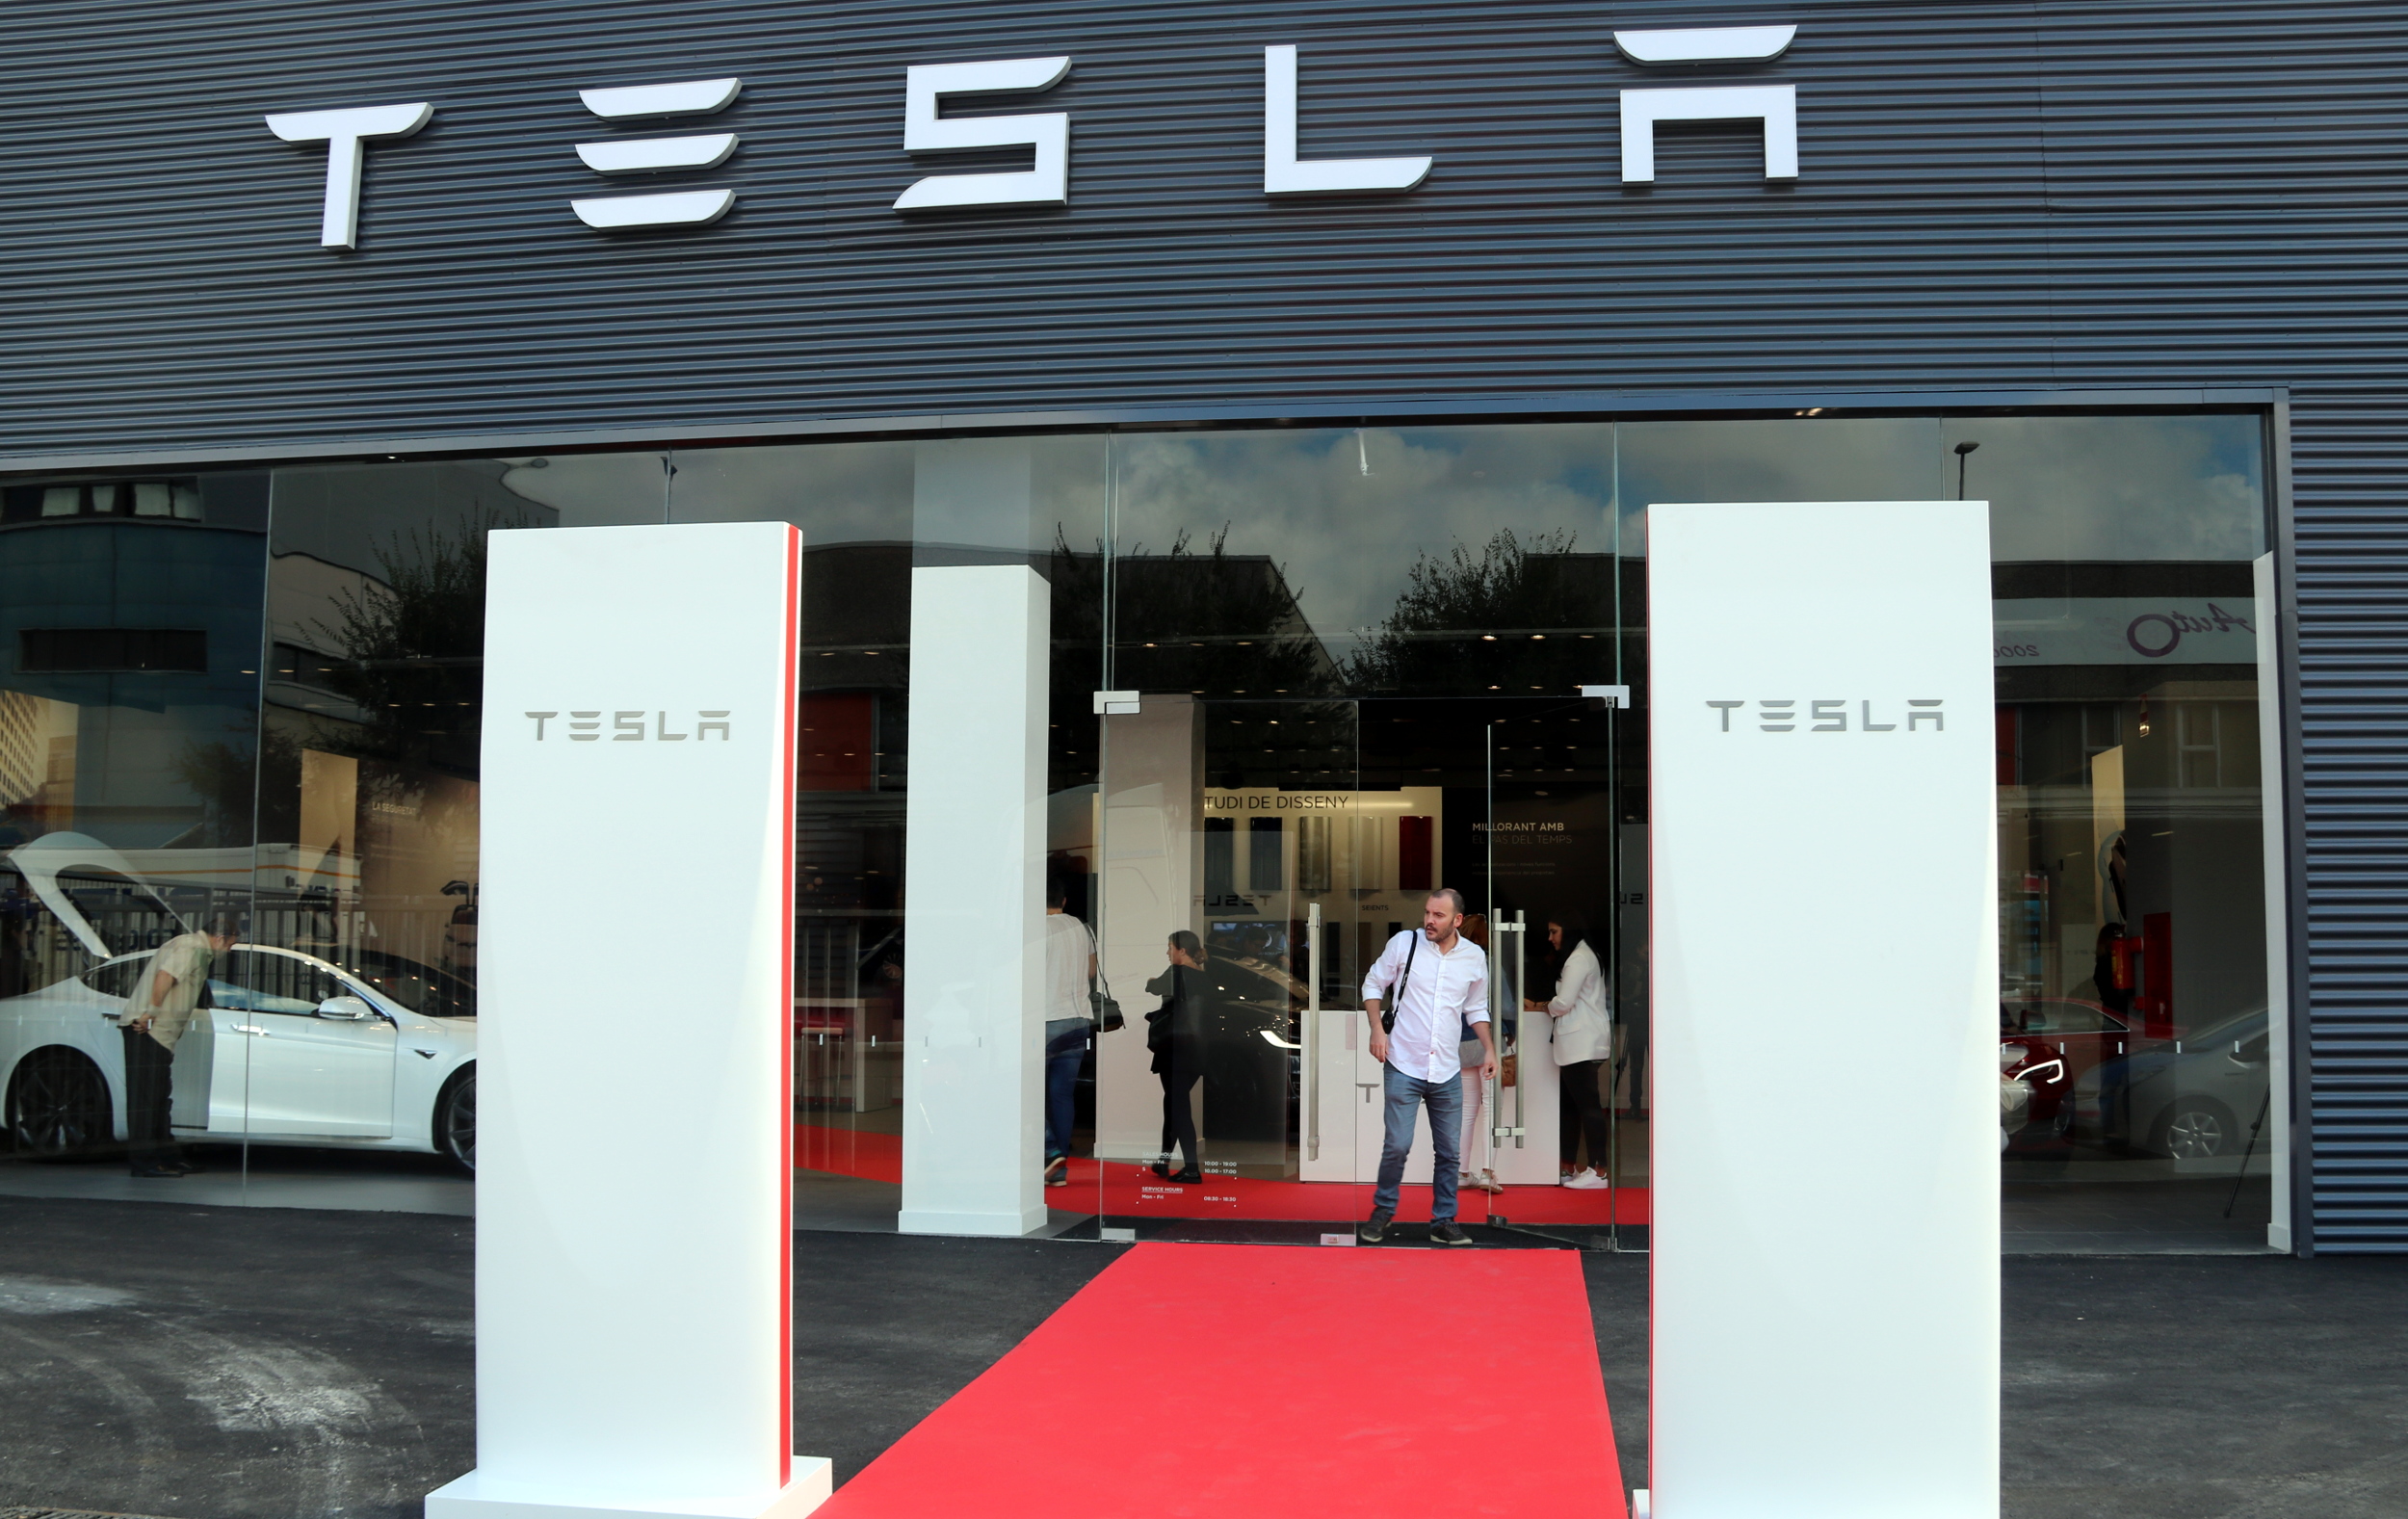 Tesla's new showroom in L'Hospitalet de Llobregat